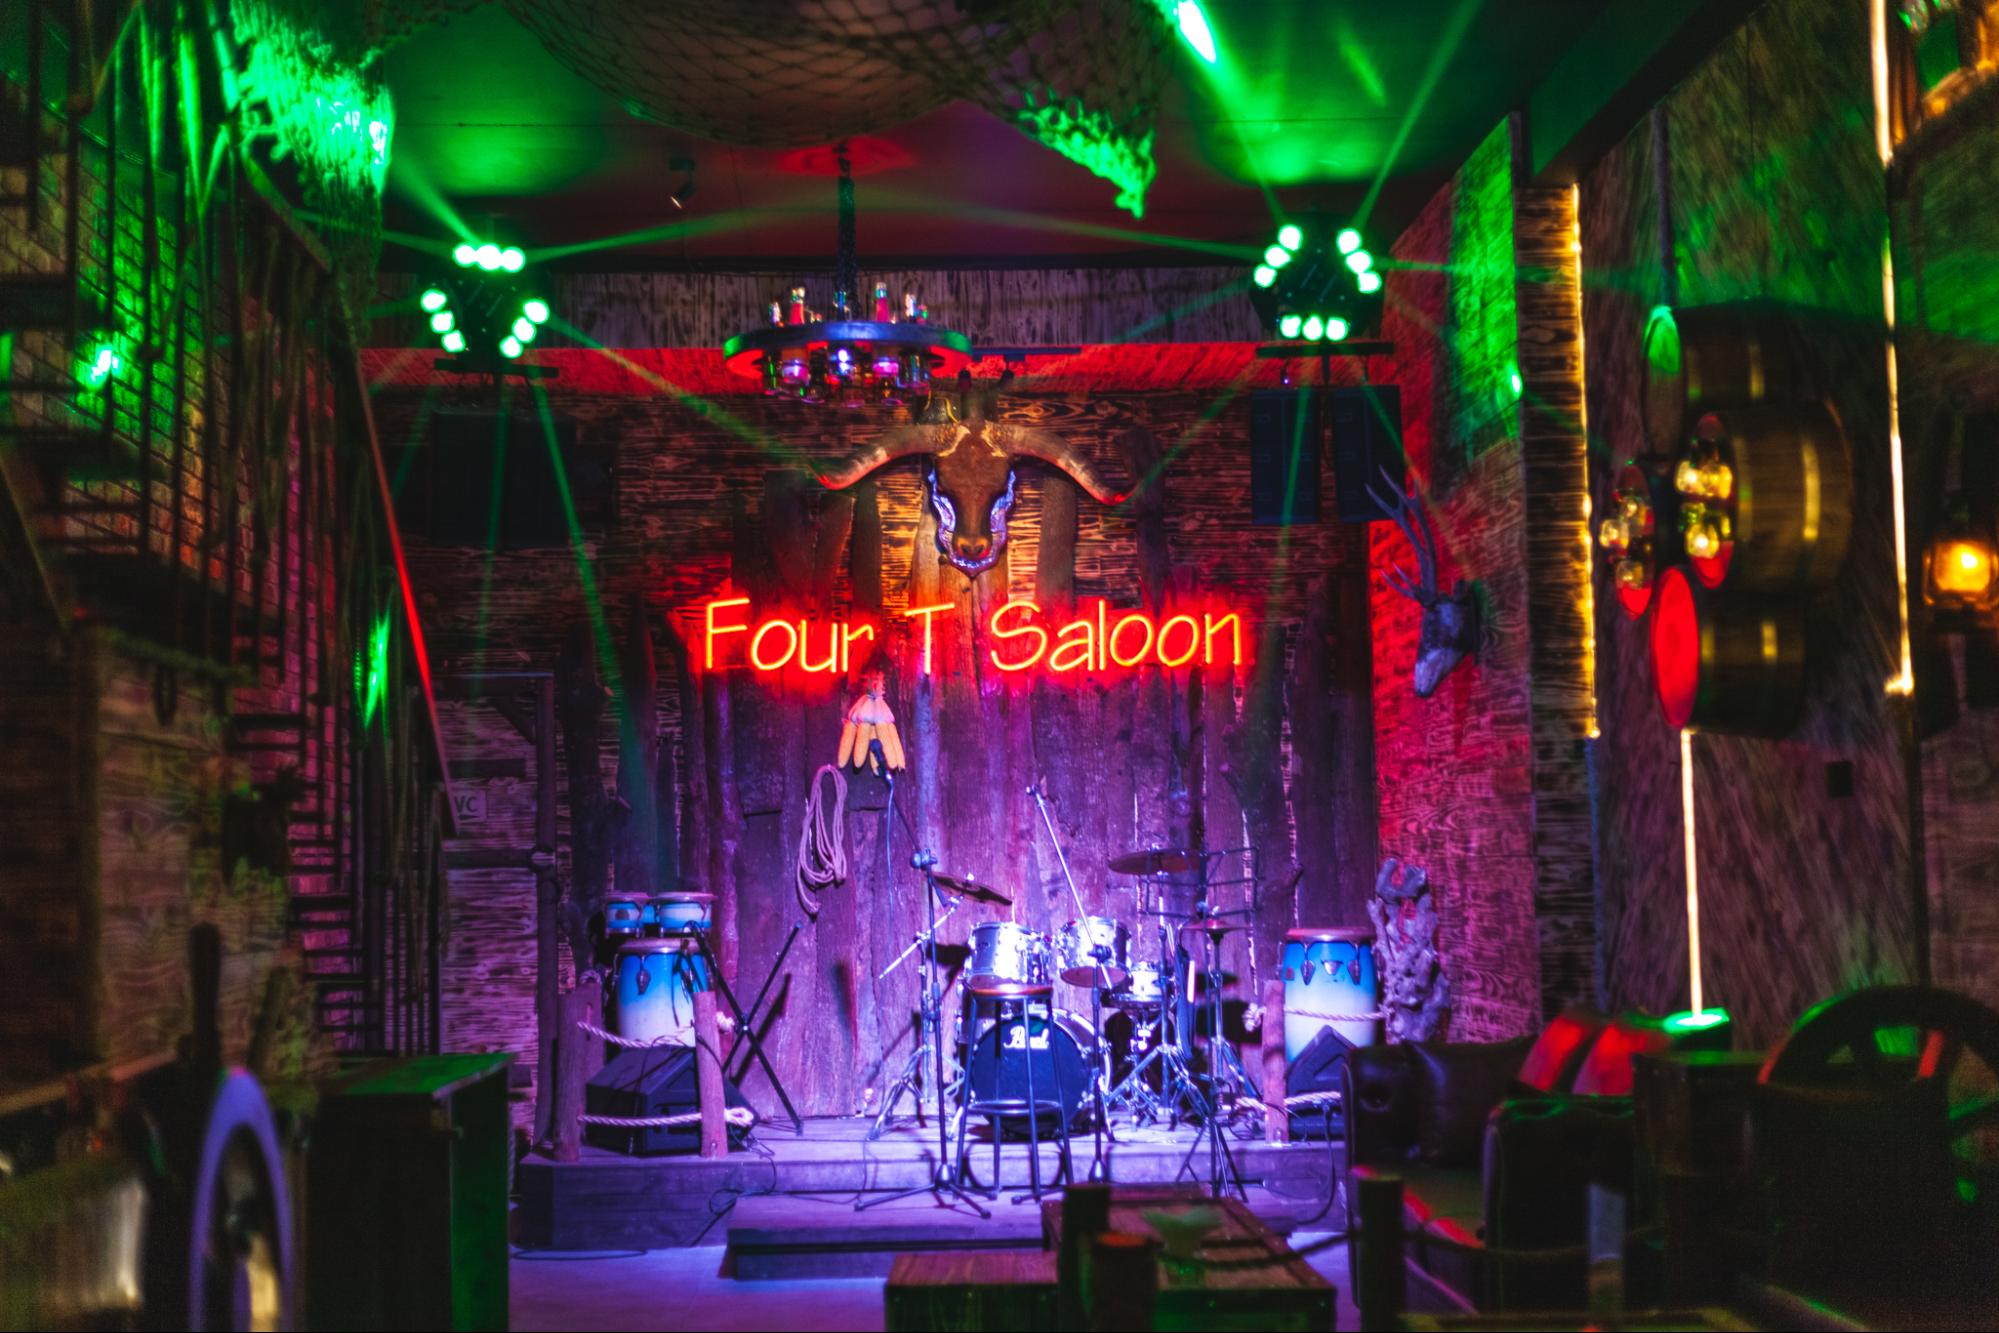 FOUR T SALOON – Quán Pub cực chill tại Đà Nẵng